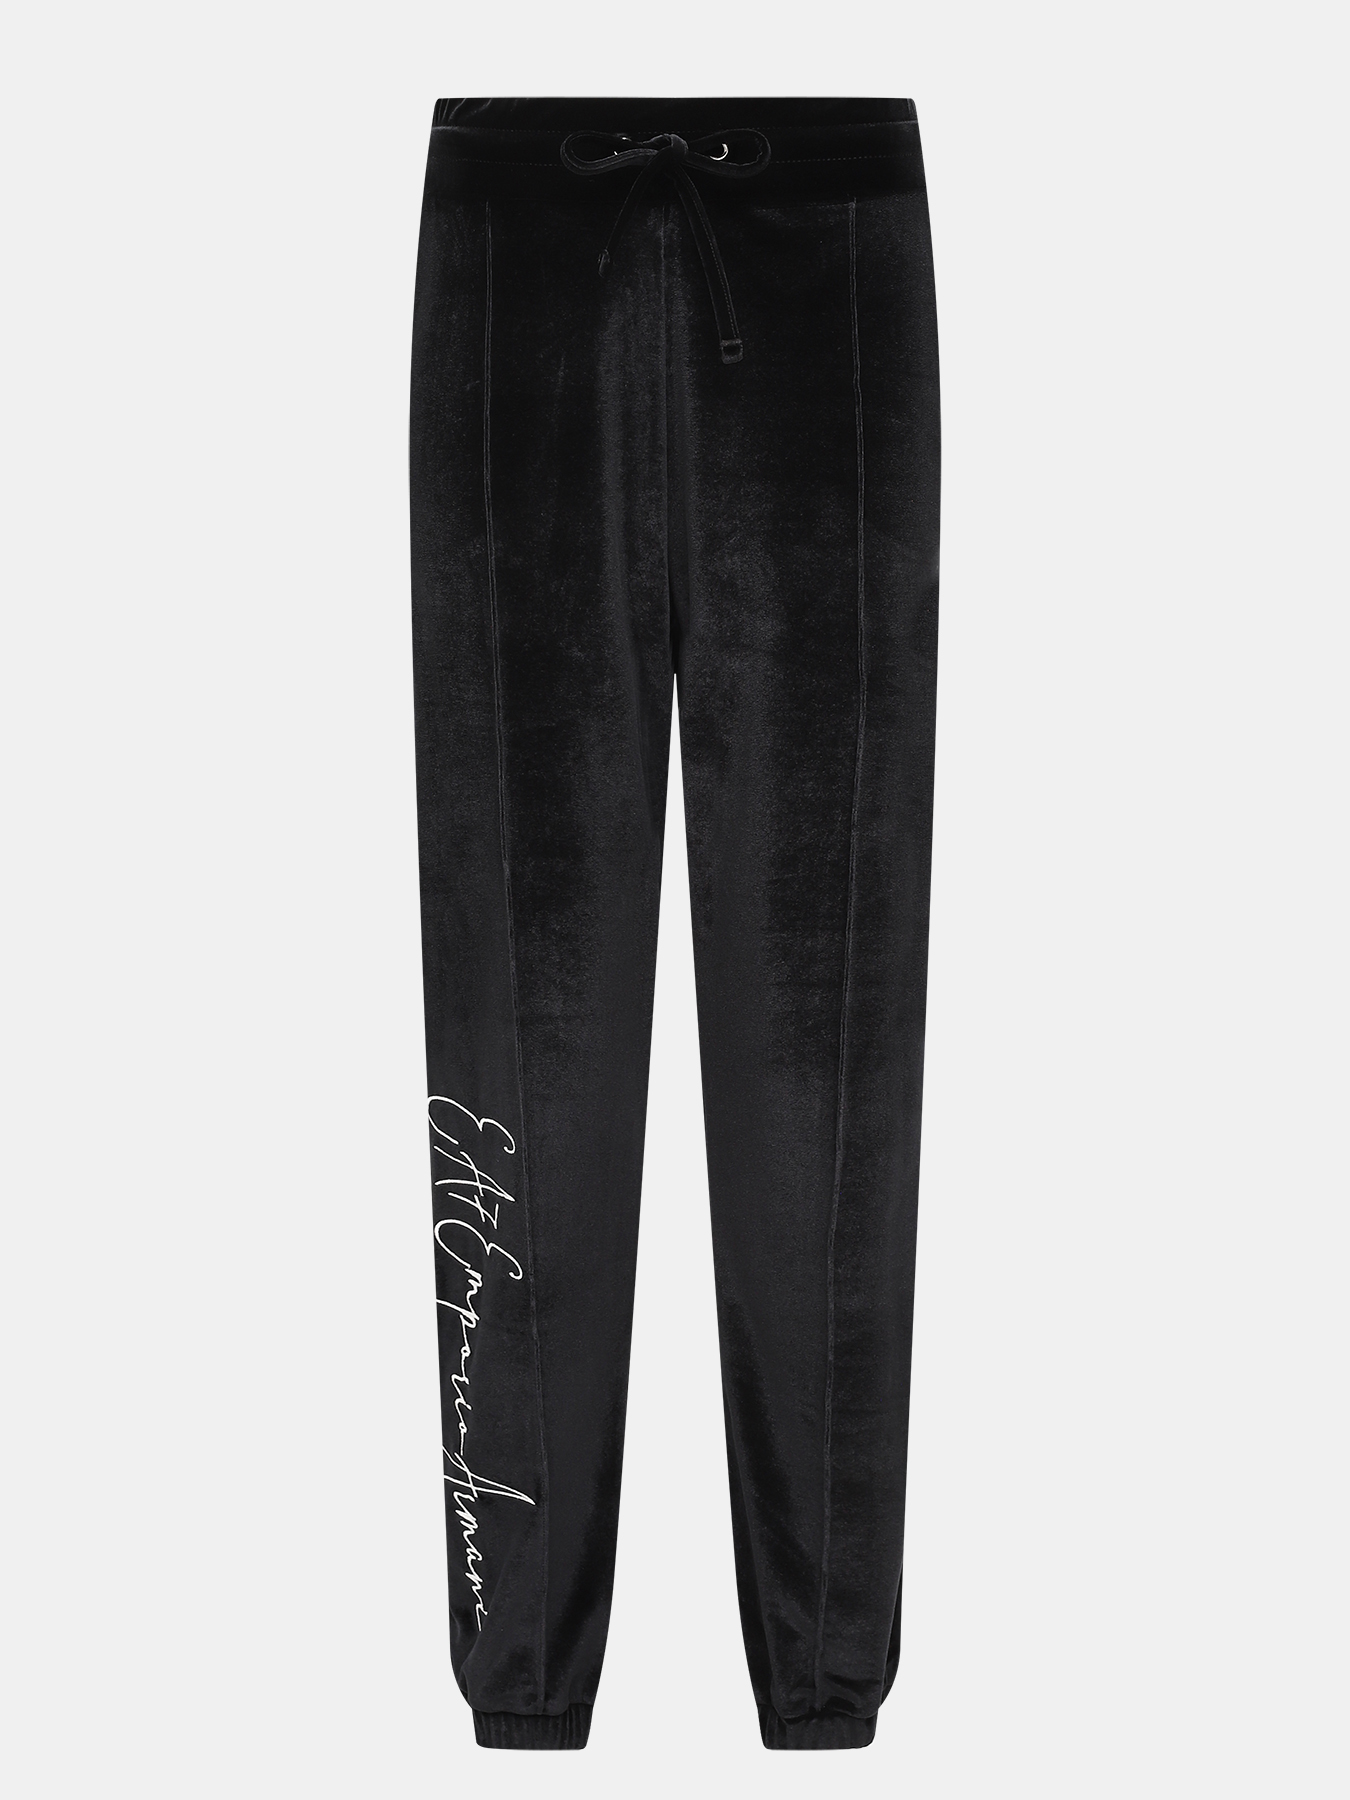 Спортивные брюки EA7 Emporio Armani 423041-042, цвет черный, размер 42-44 - фото 1